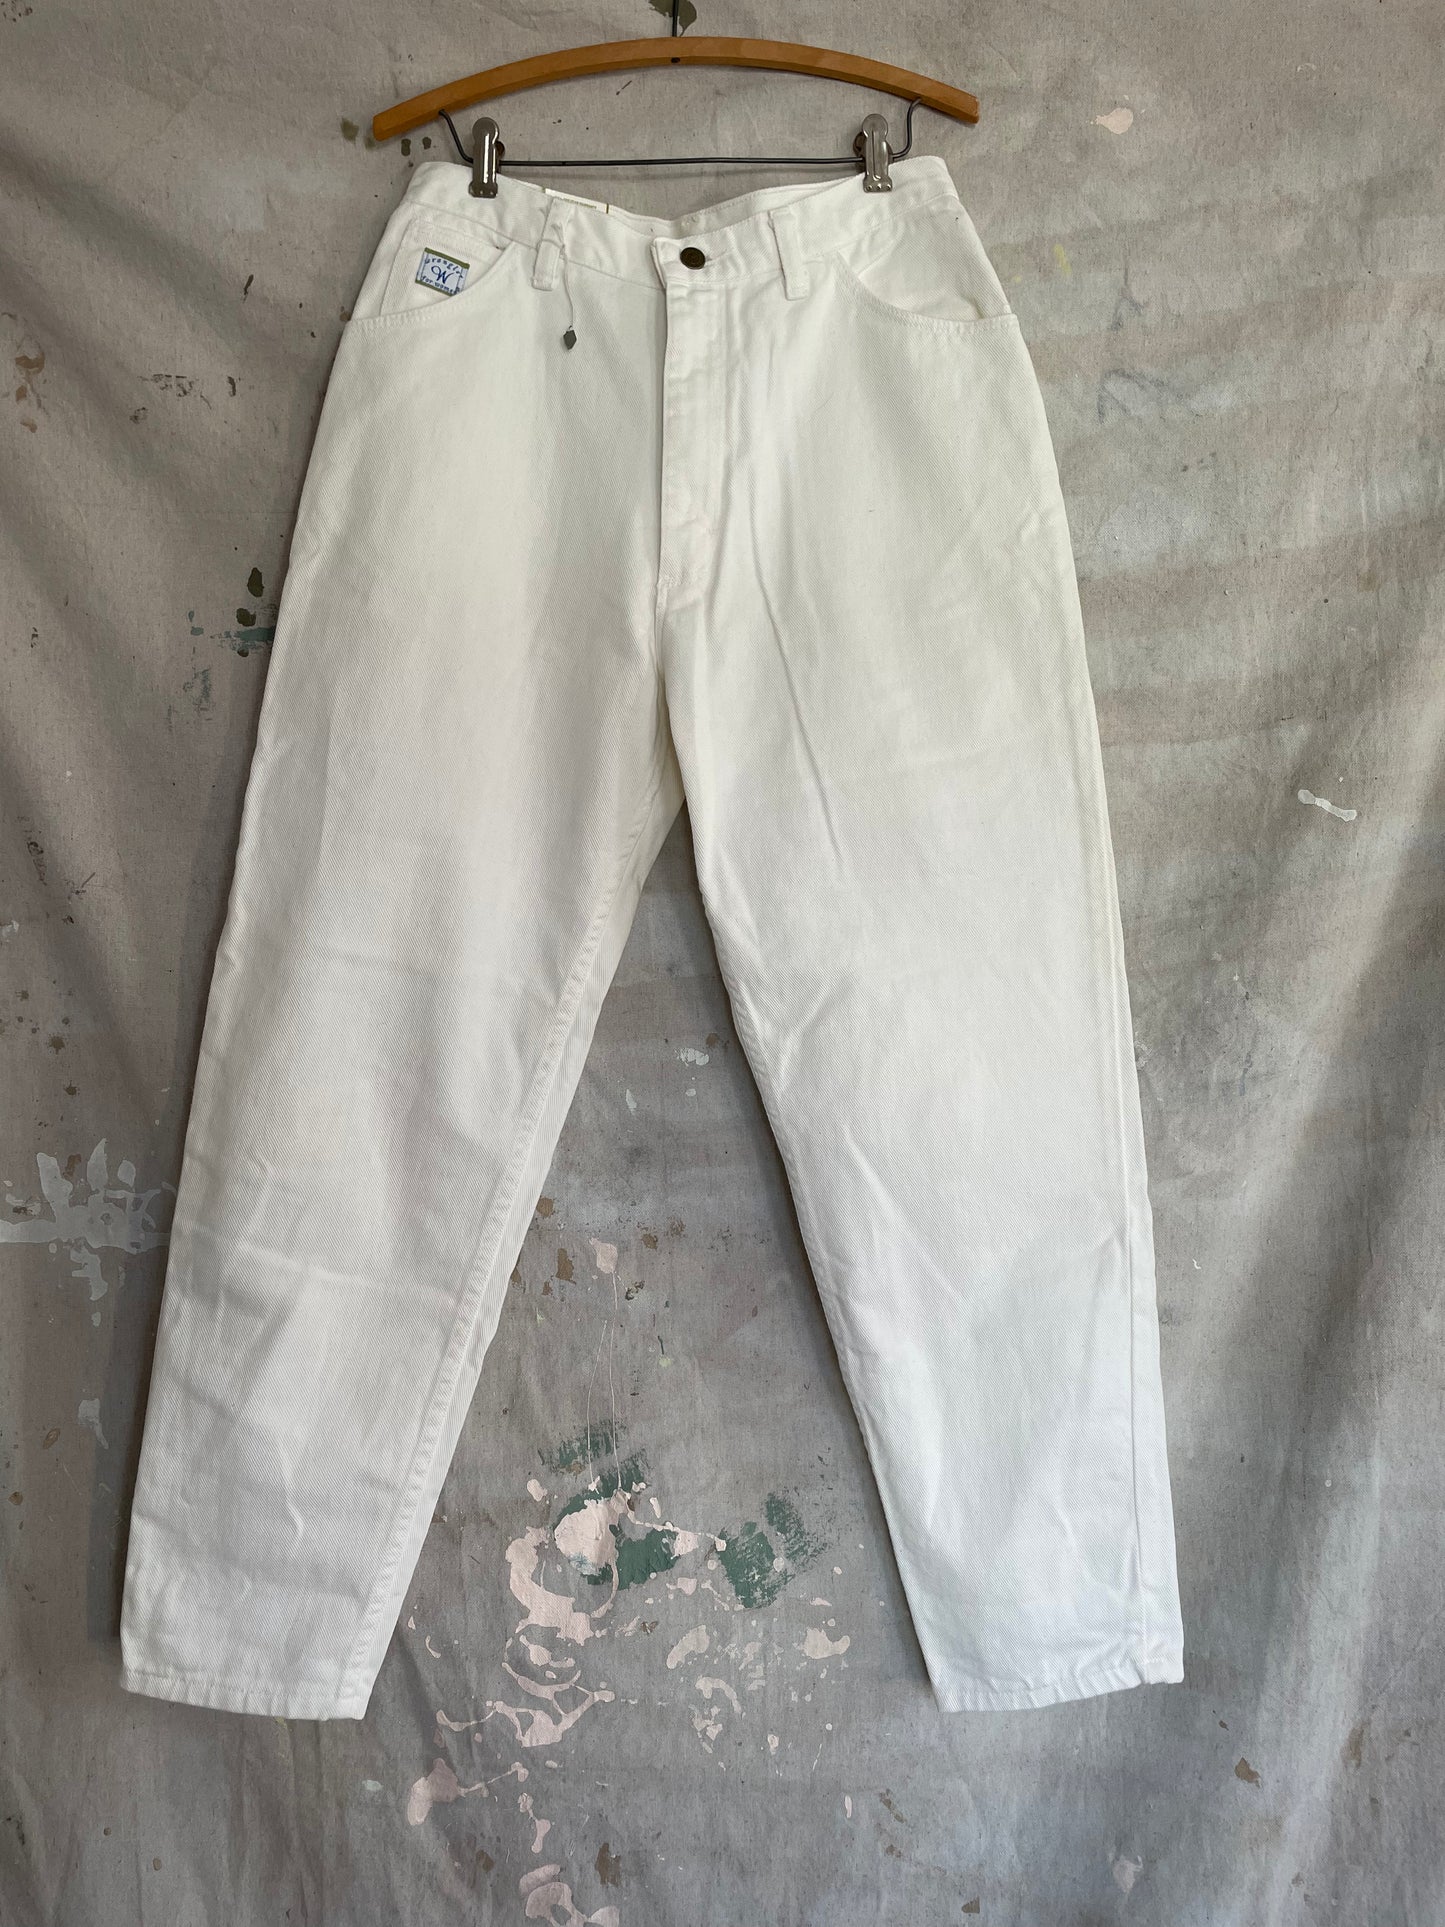 90s Deadstock White Wrangler Jeans